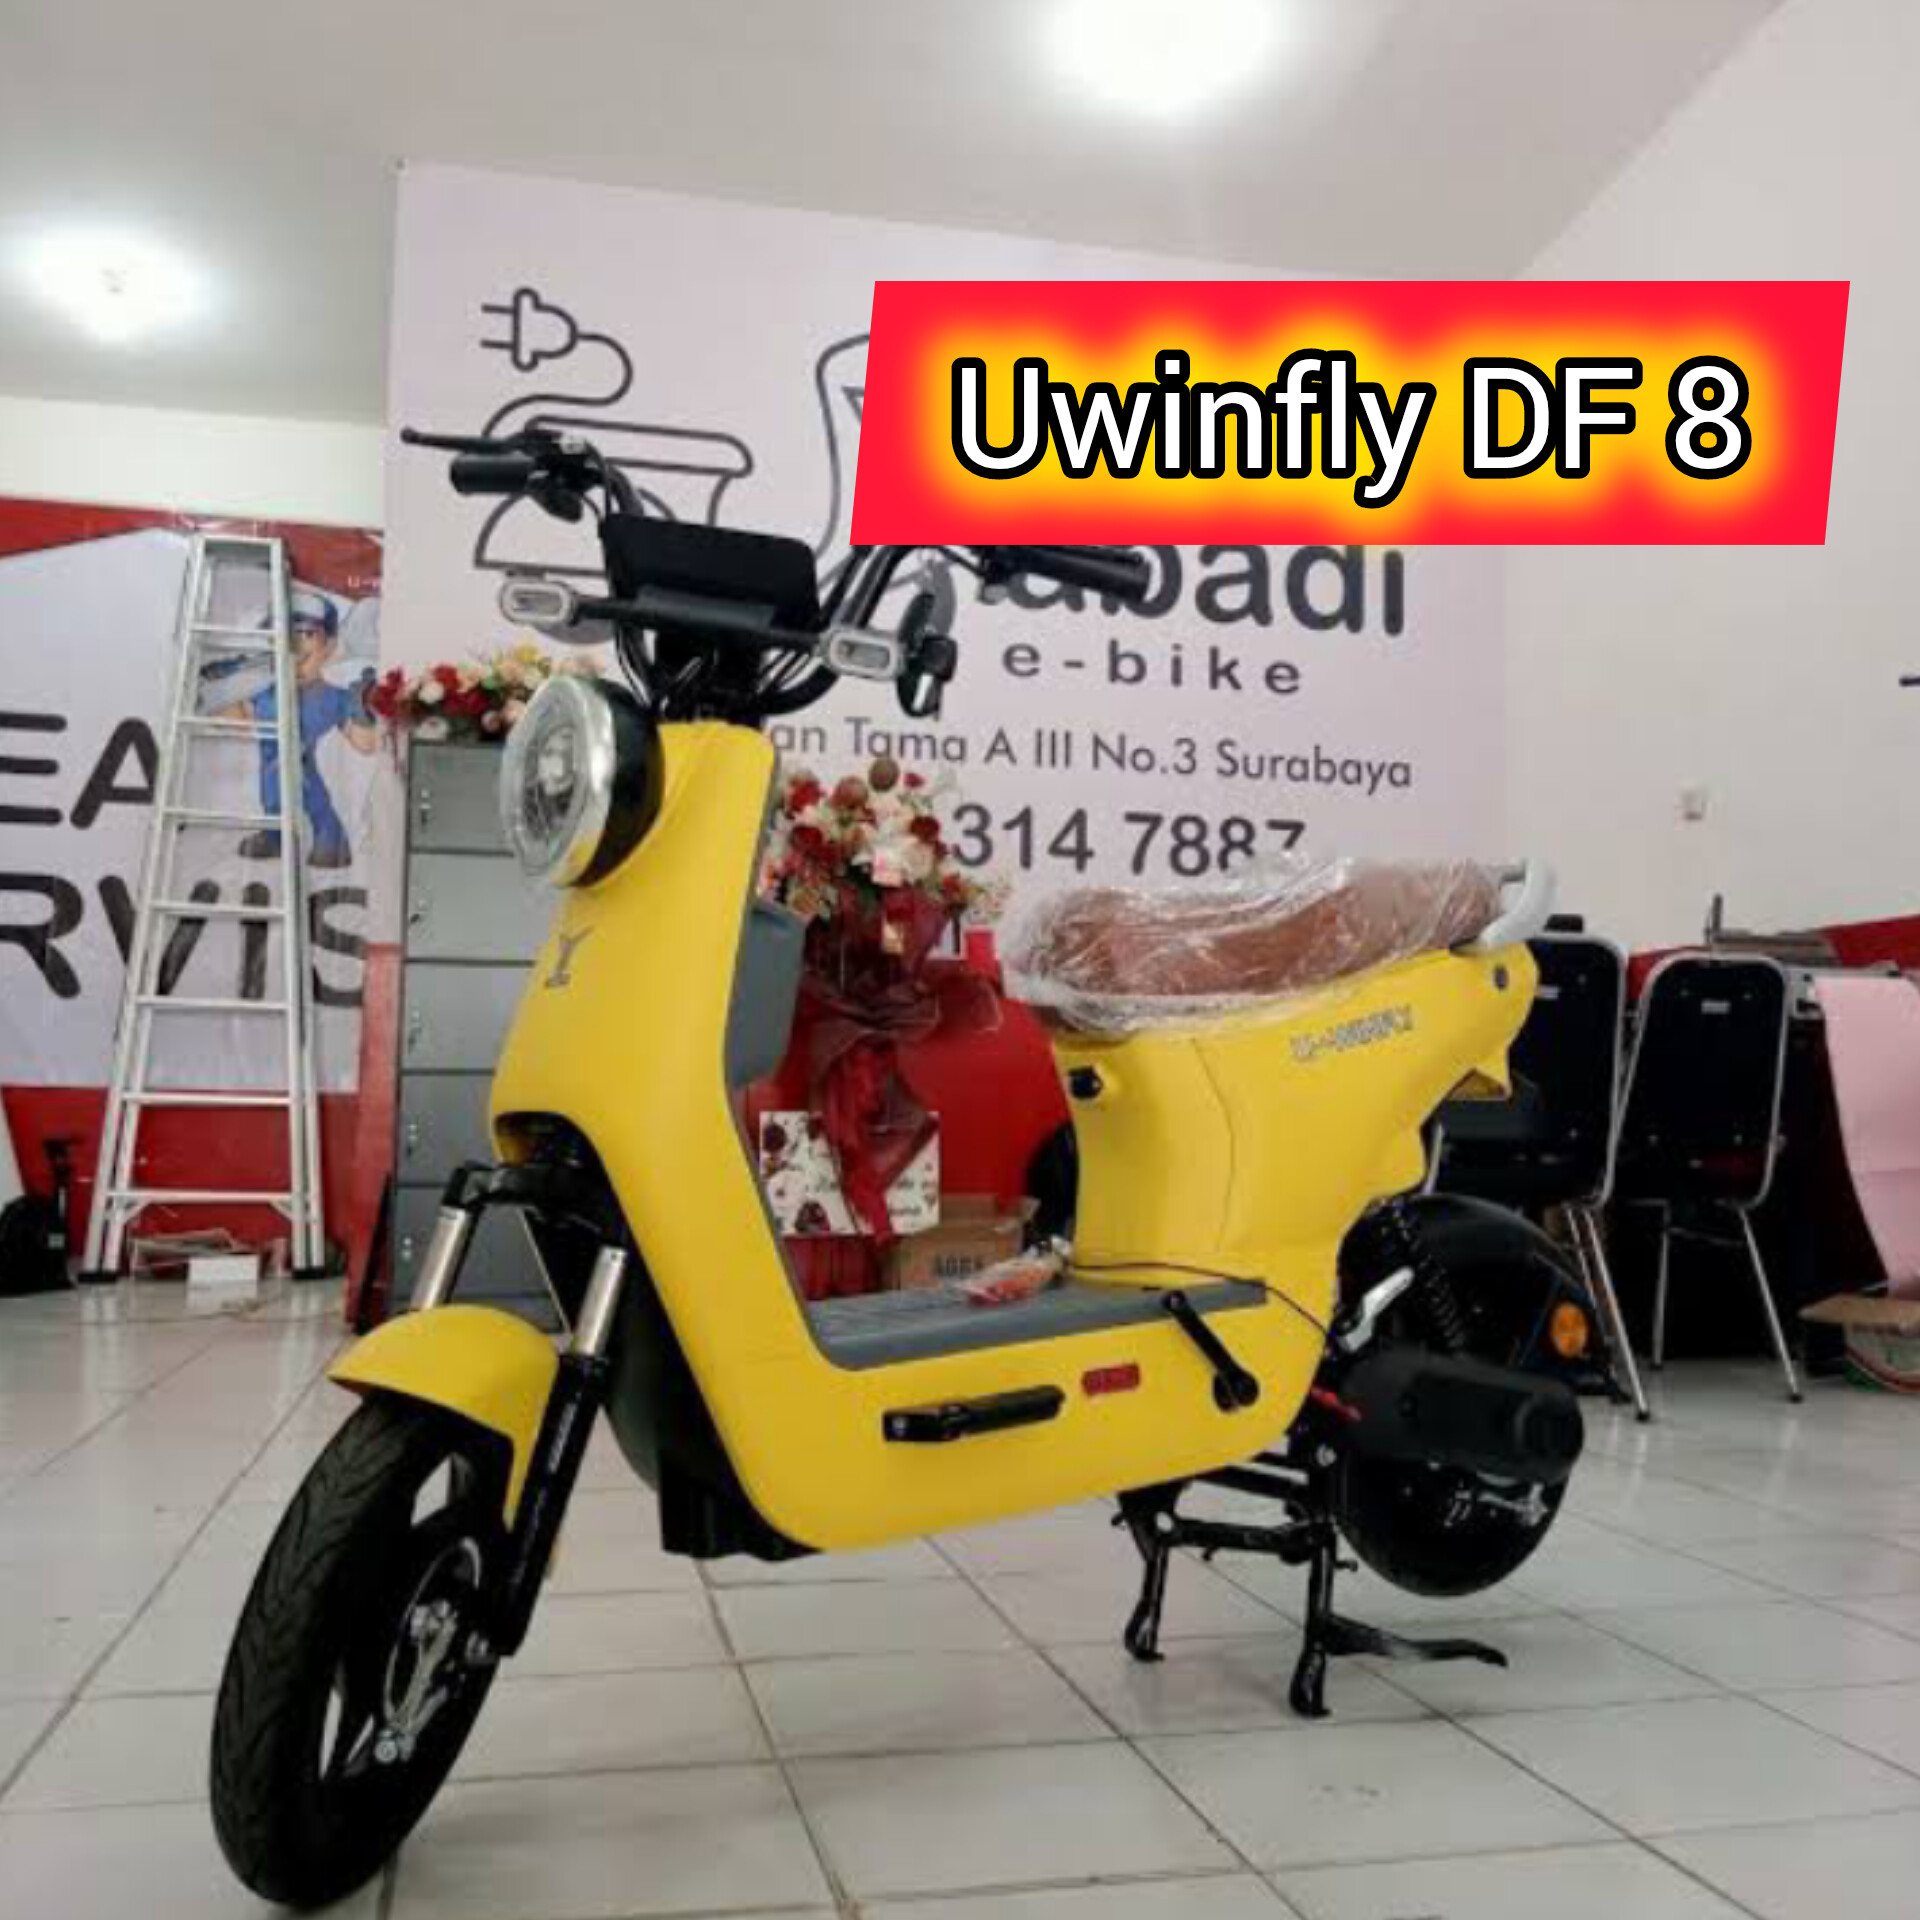 Desain Lucu dan Anti Macet, Sepeda Listrik Uwinfly DF 8 di Banderol Mulai Rp. 4 Jutaan Saja